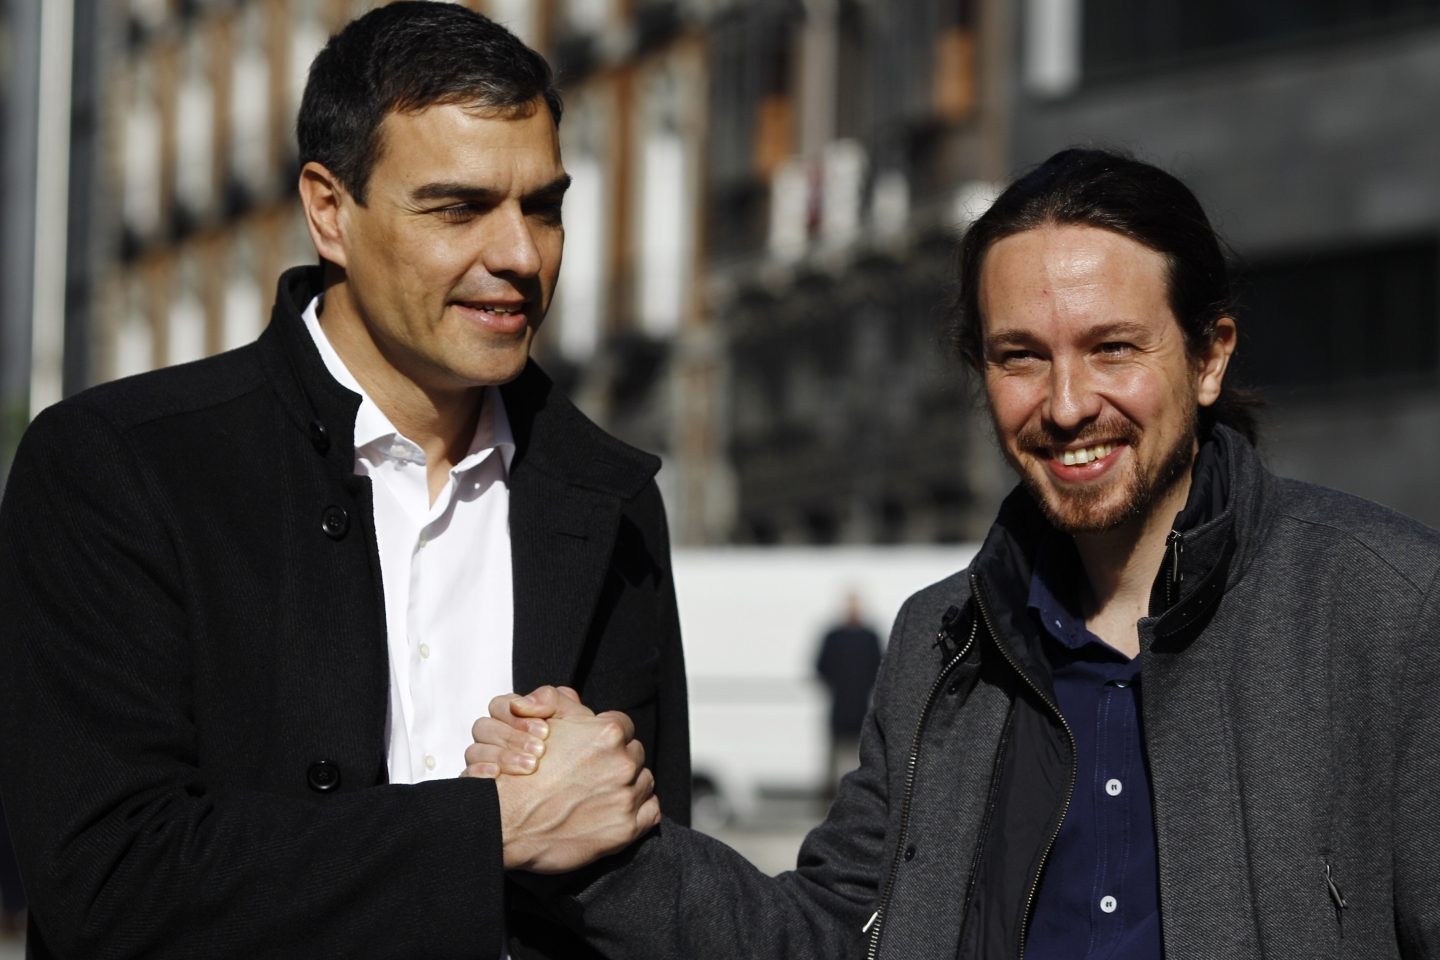 Sánchez e Iglesias inician el lunes sus contactos en busca de acuerdos